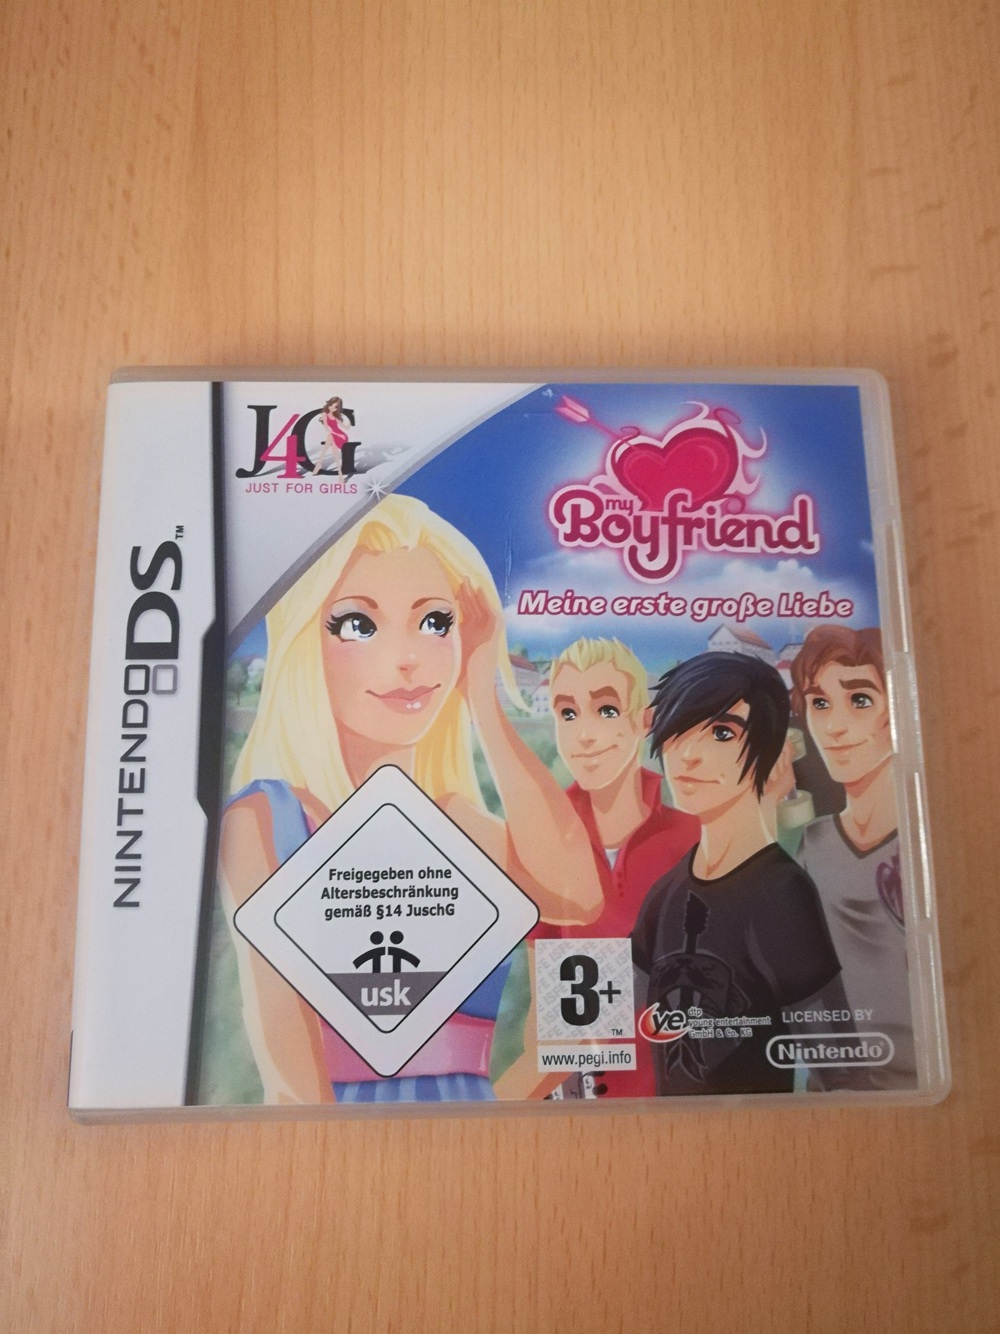 Nintendo DS-Spiel "my Boyfriend - Meine erste große Liebe", sehr gut erhalten